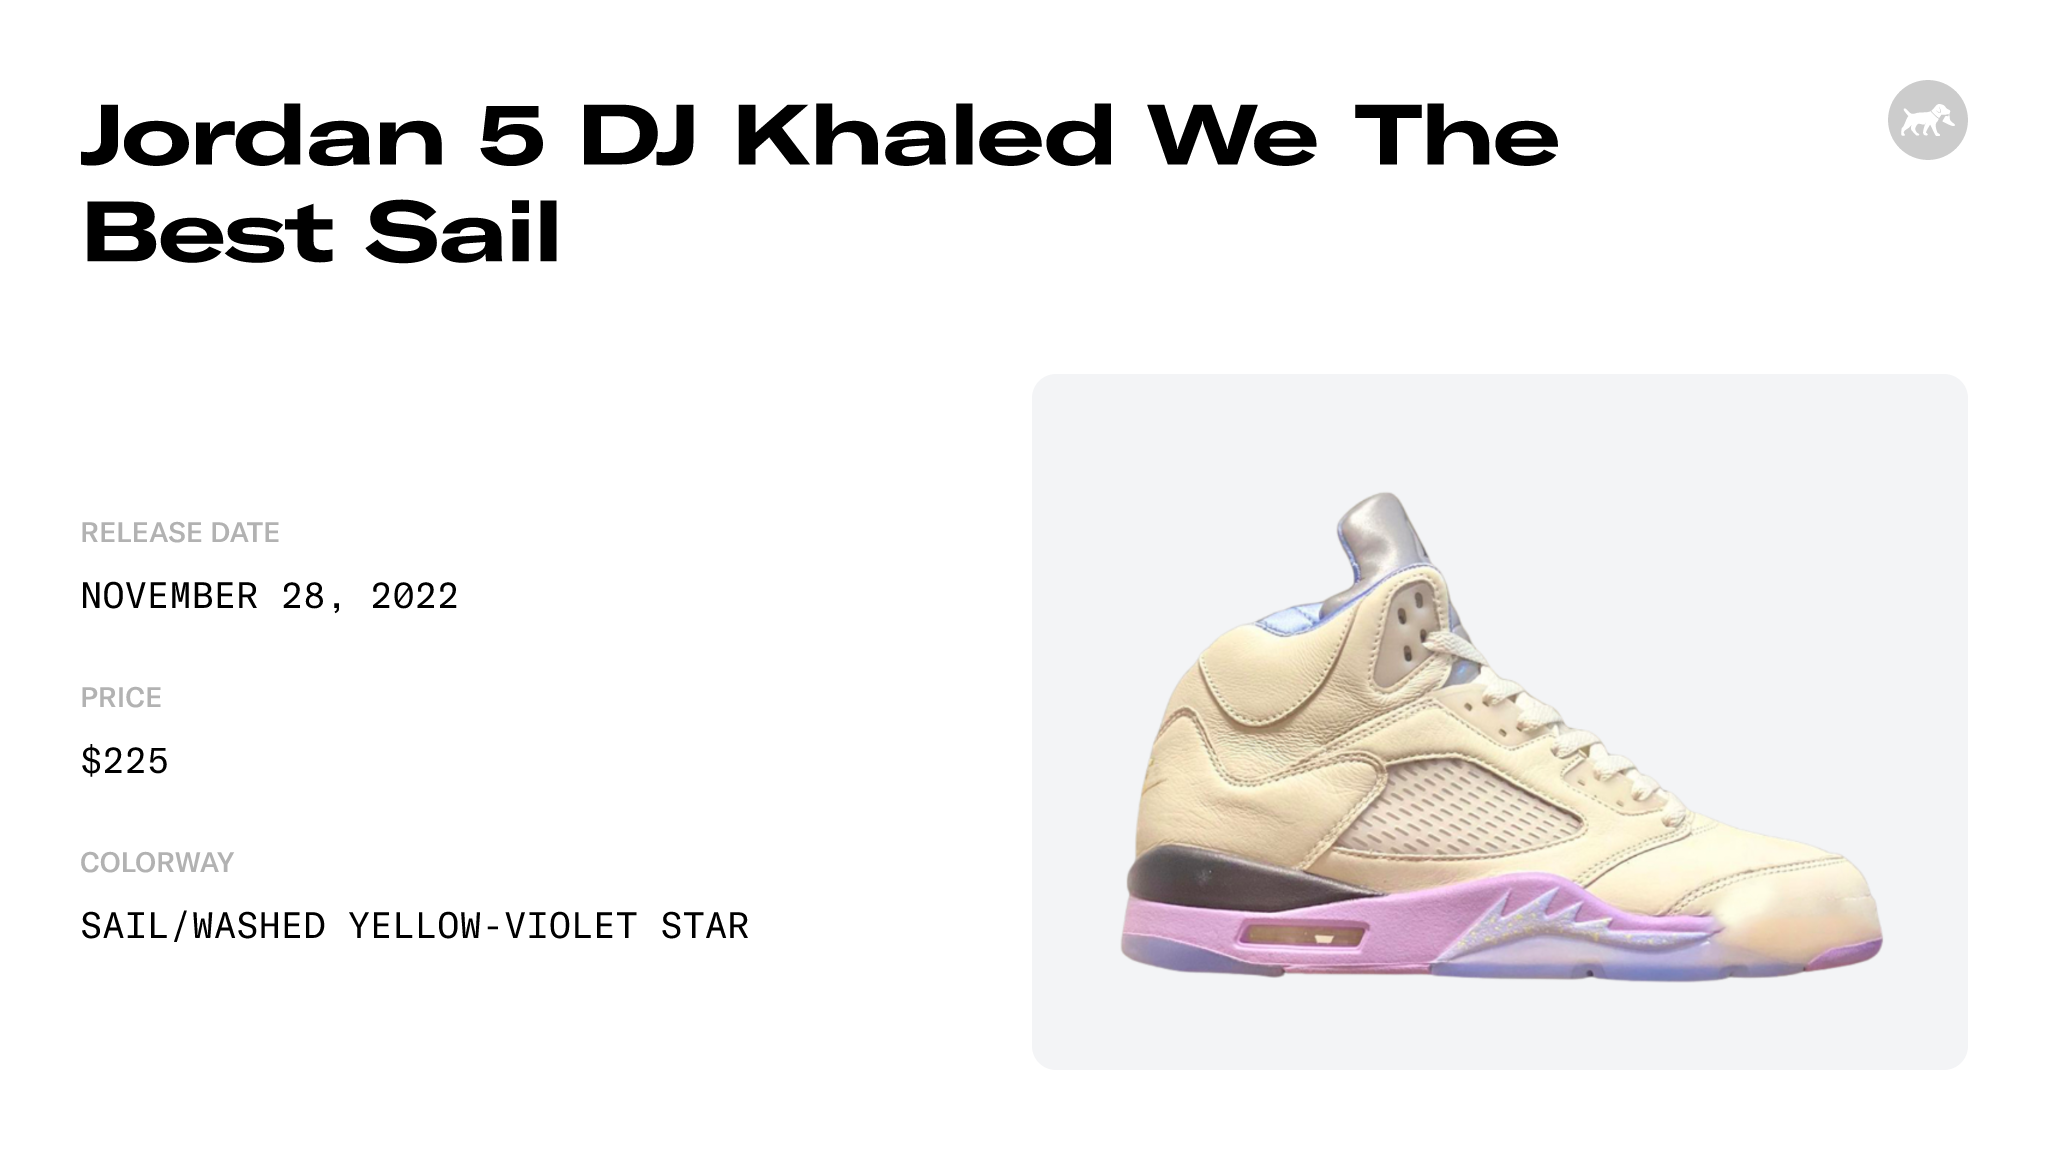 Air Jordan 5 Retro DJ Khaled We The Best Sail